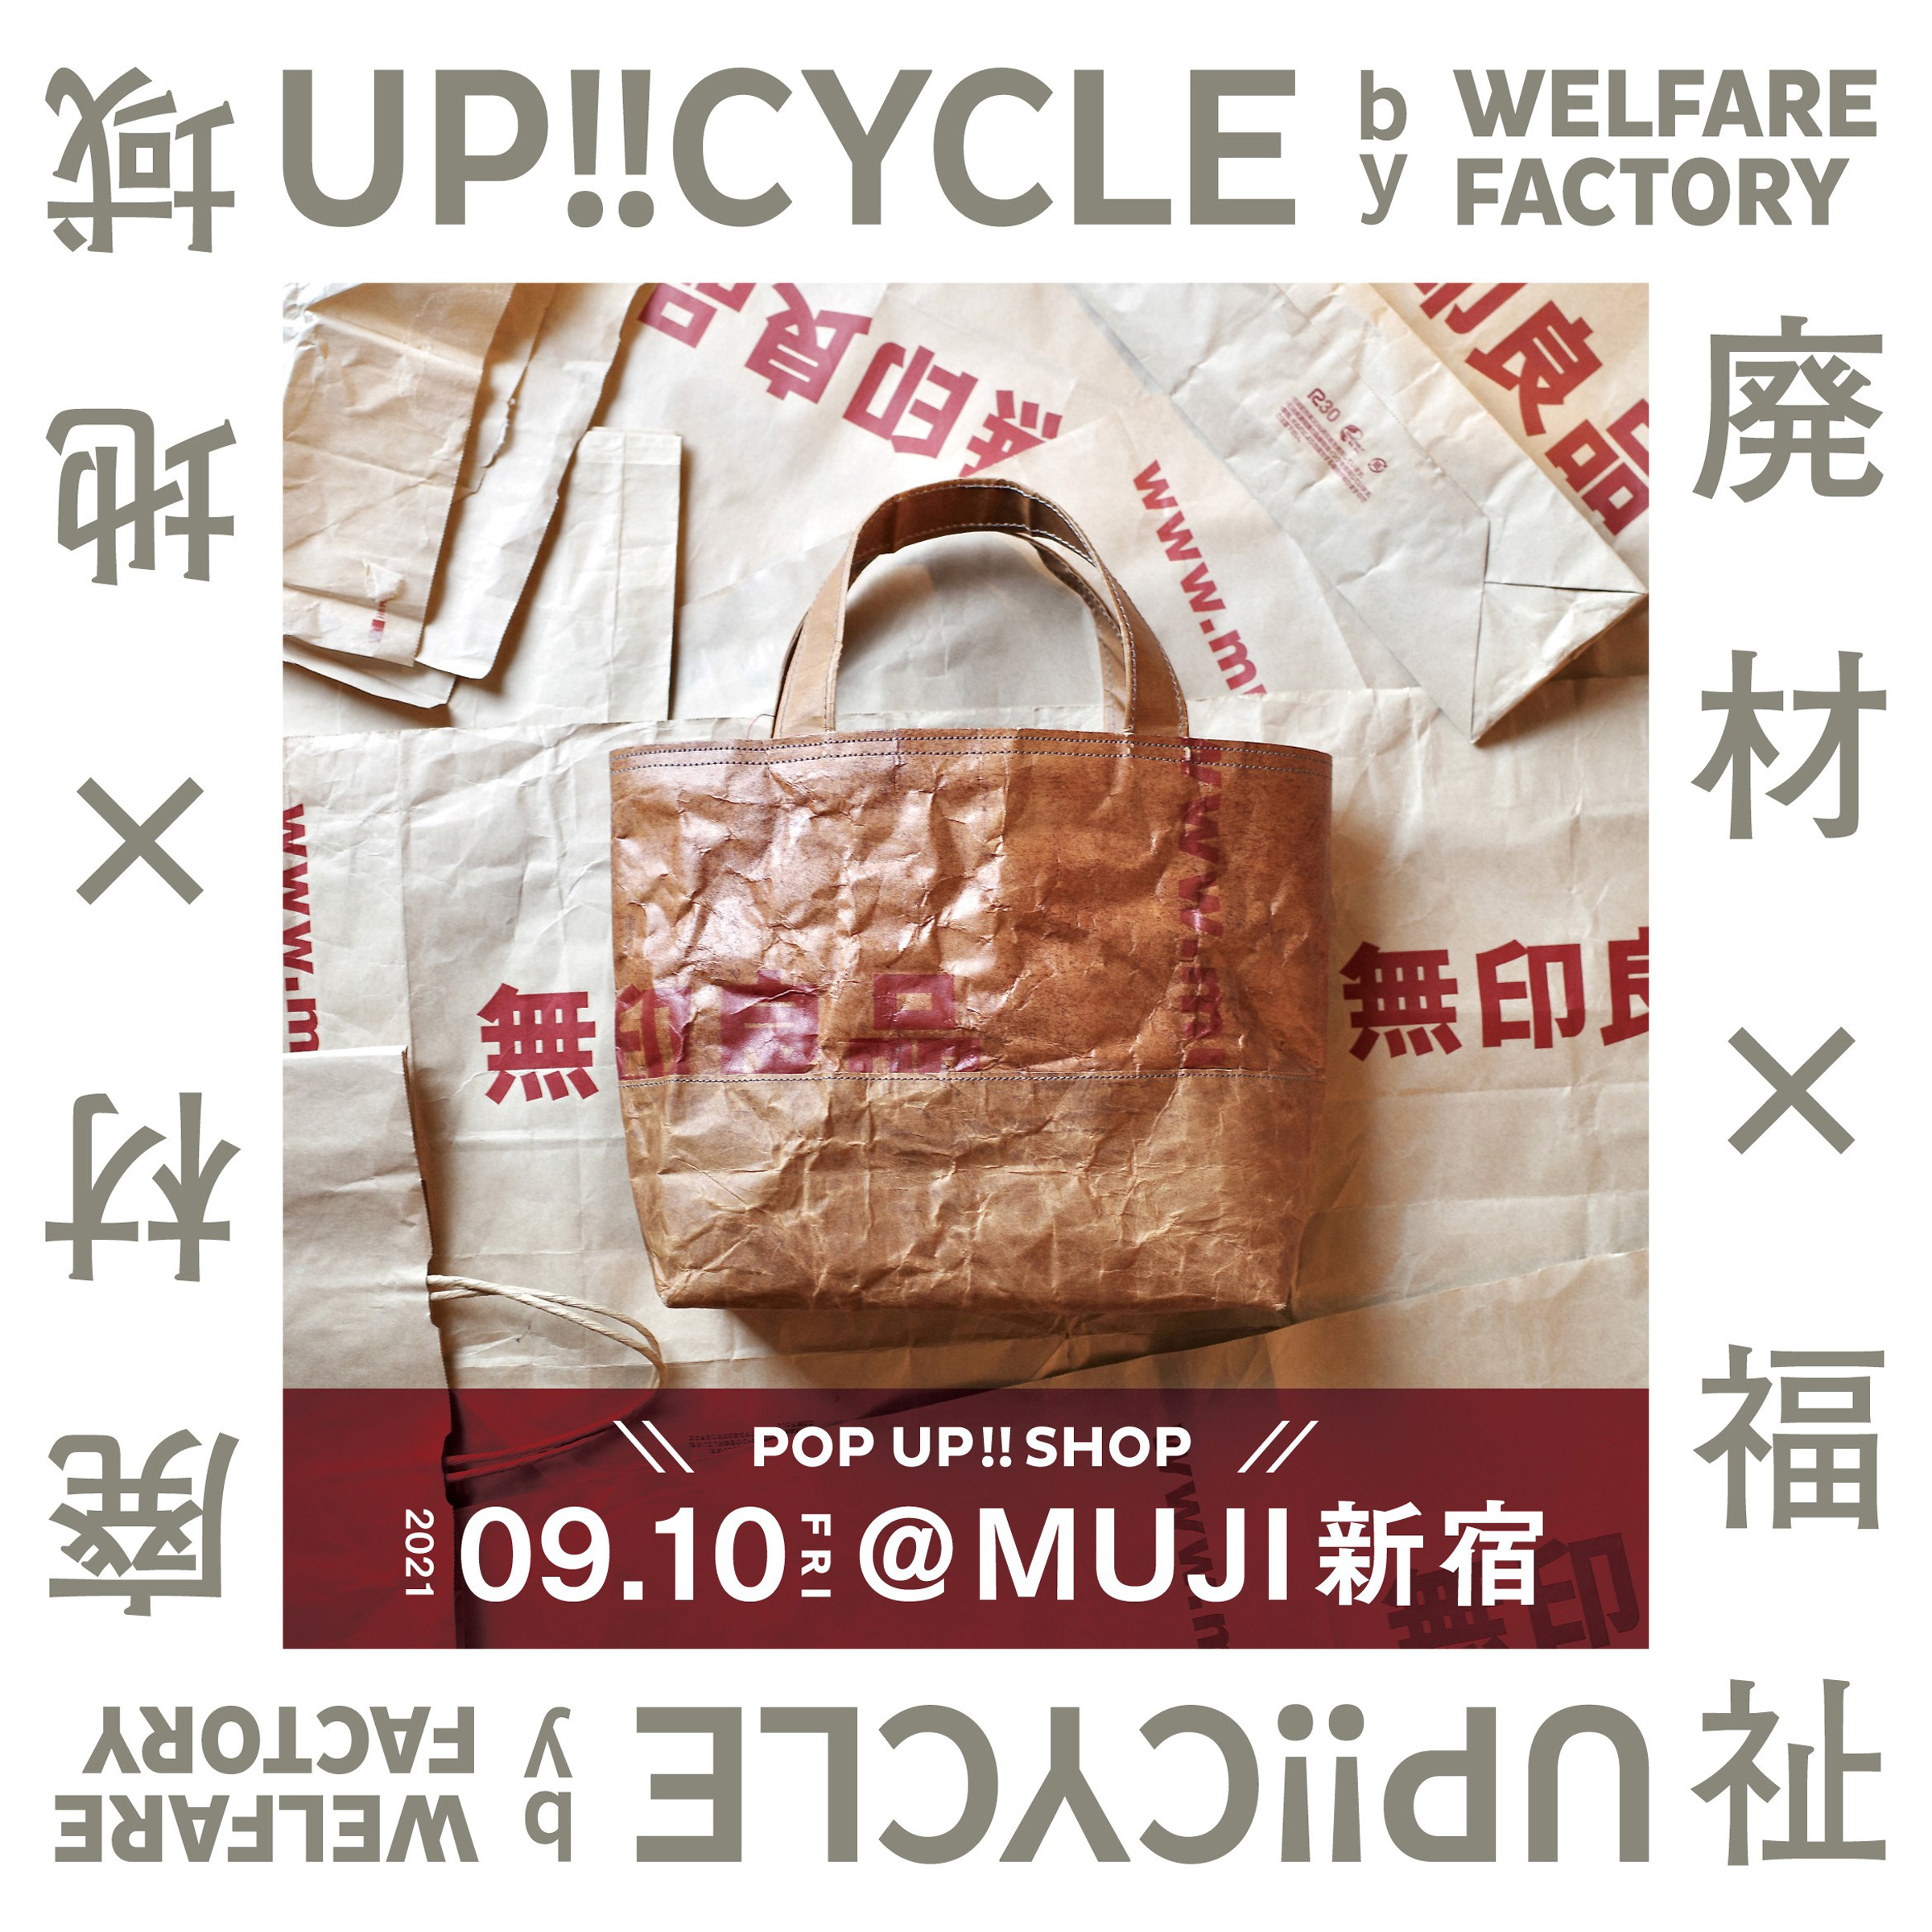 無印良品の紙袋を使ったリサイクルバッグを販売、「MUJI 新宿」で